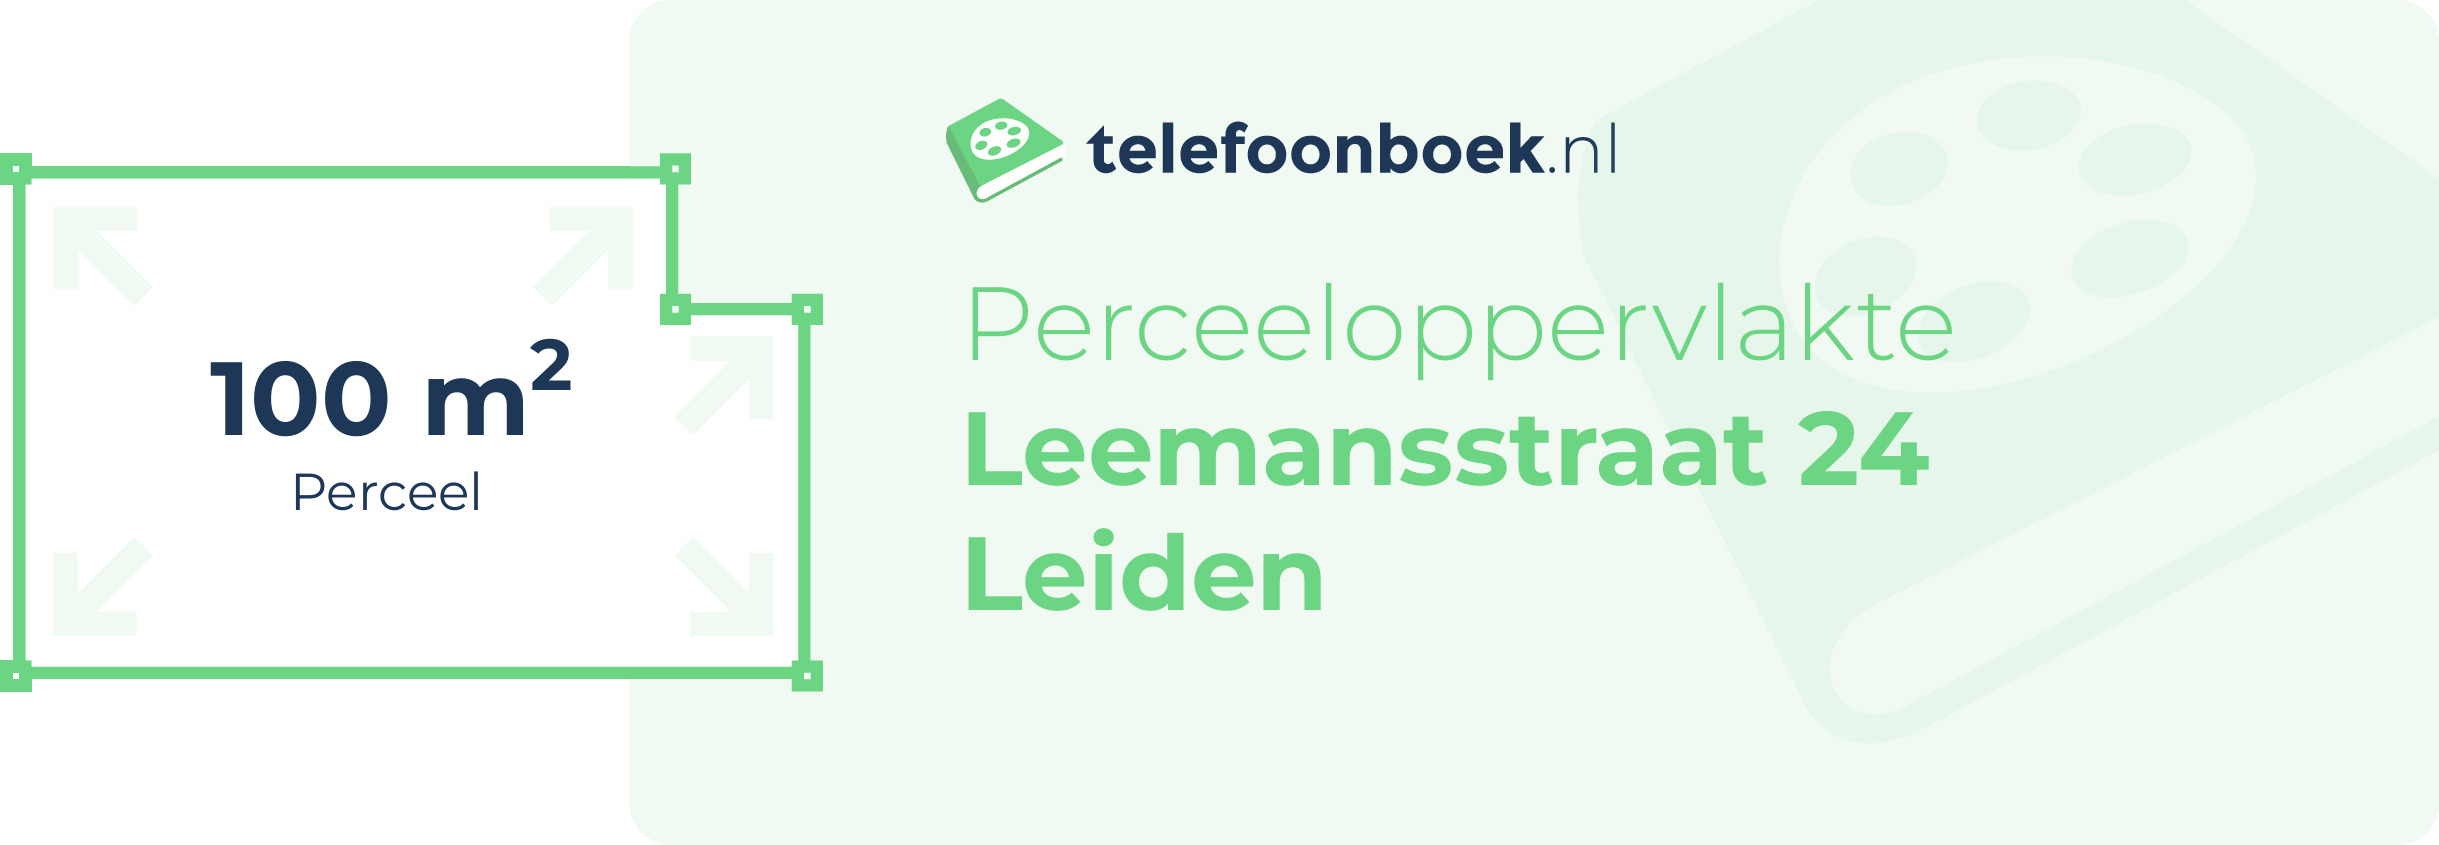 Perceeloppervlakte Leemansstraat 24 Leiden